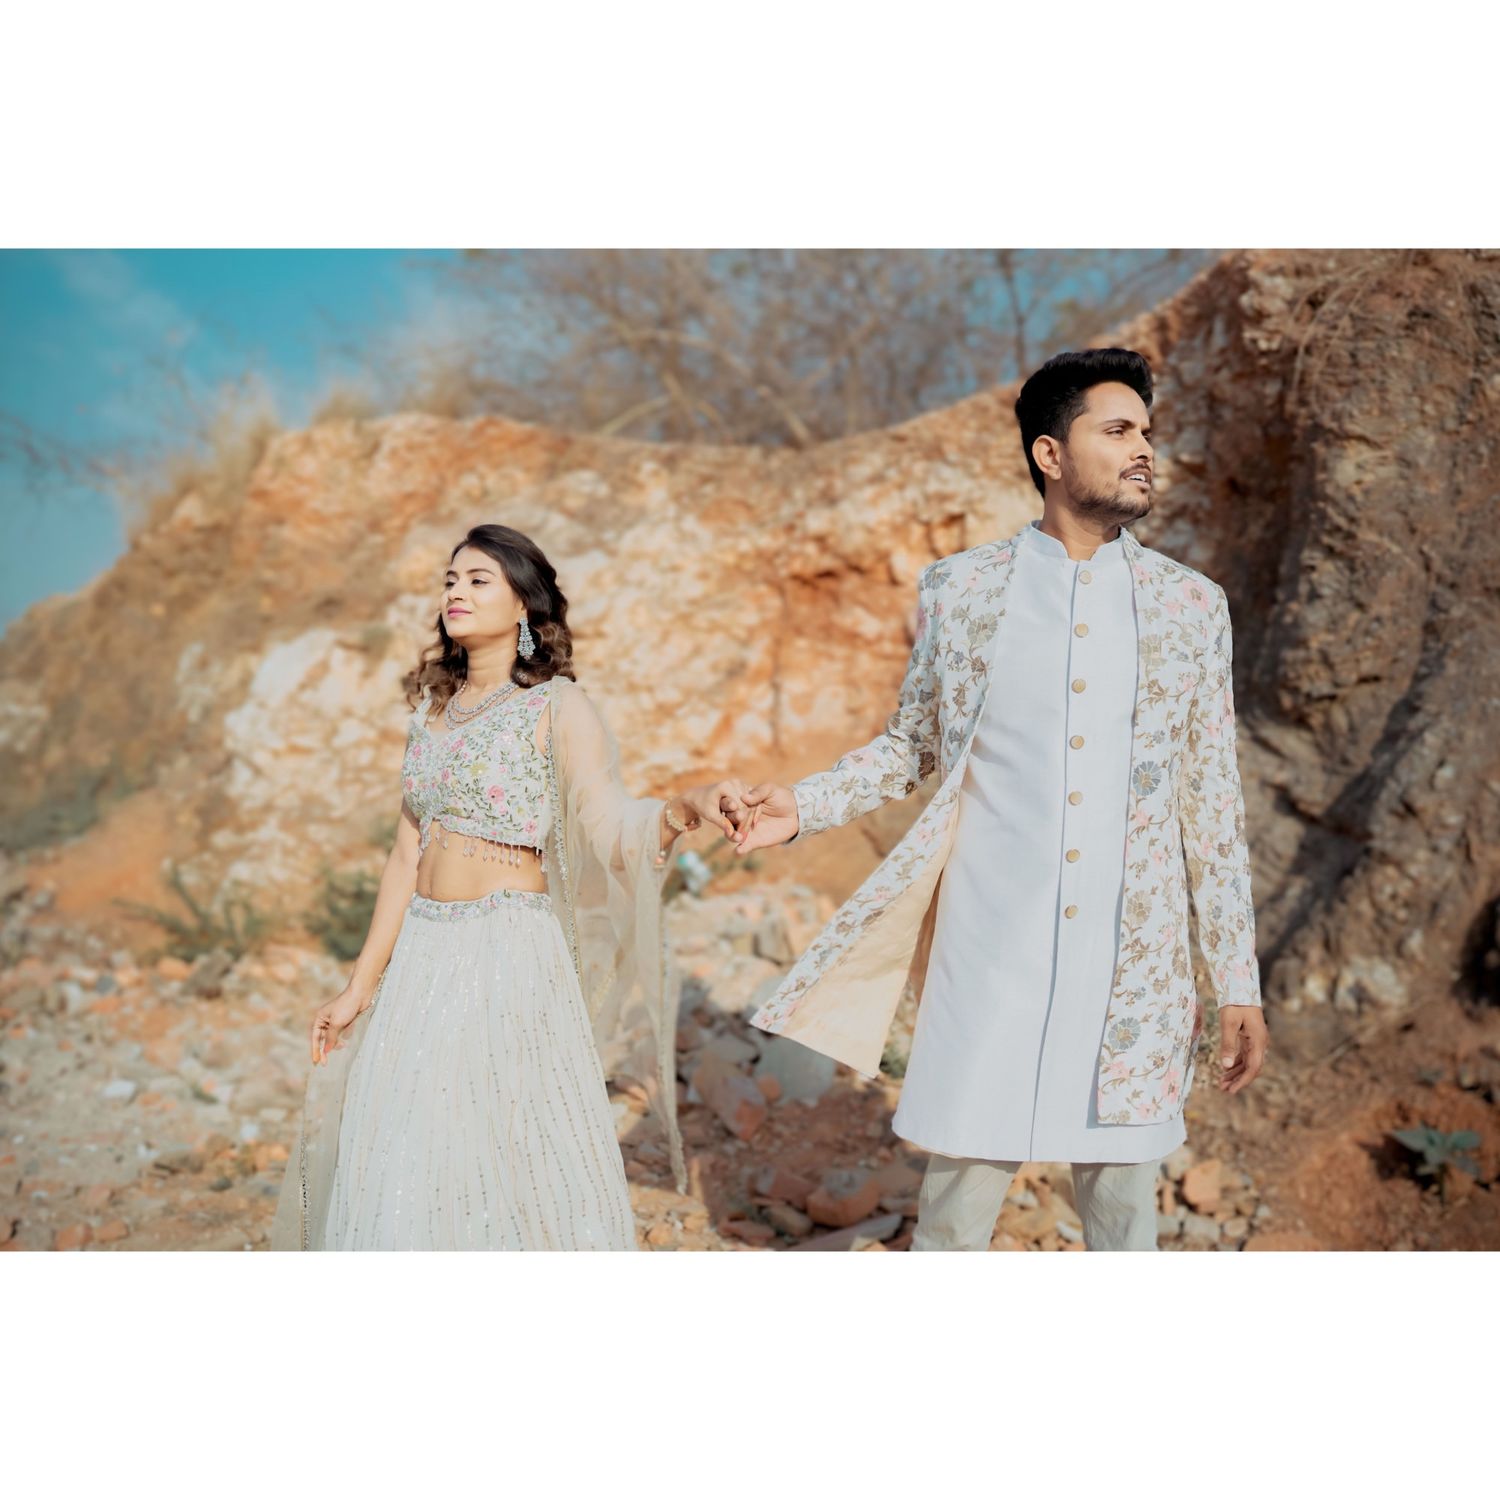 "Stylish couple outfit with coordinated Indo-western sherwani and lehenga."